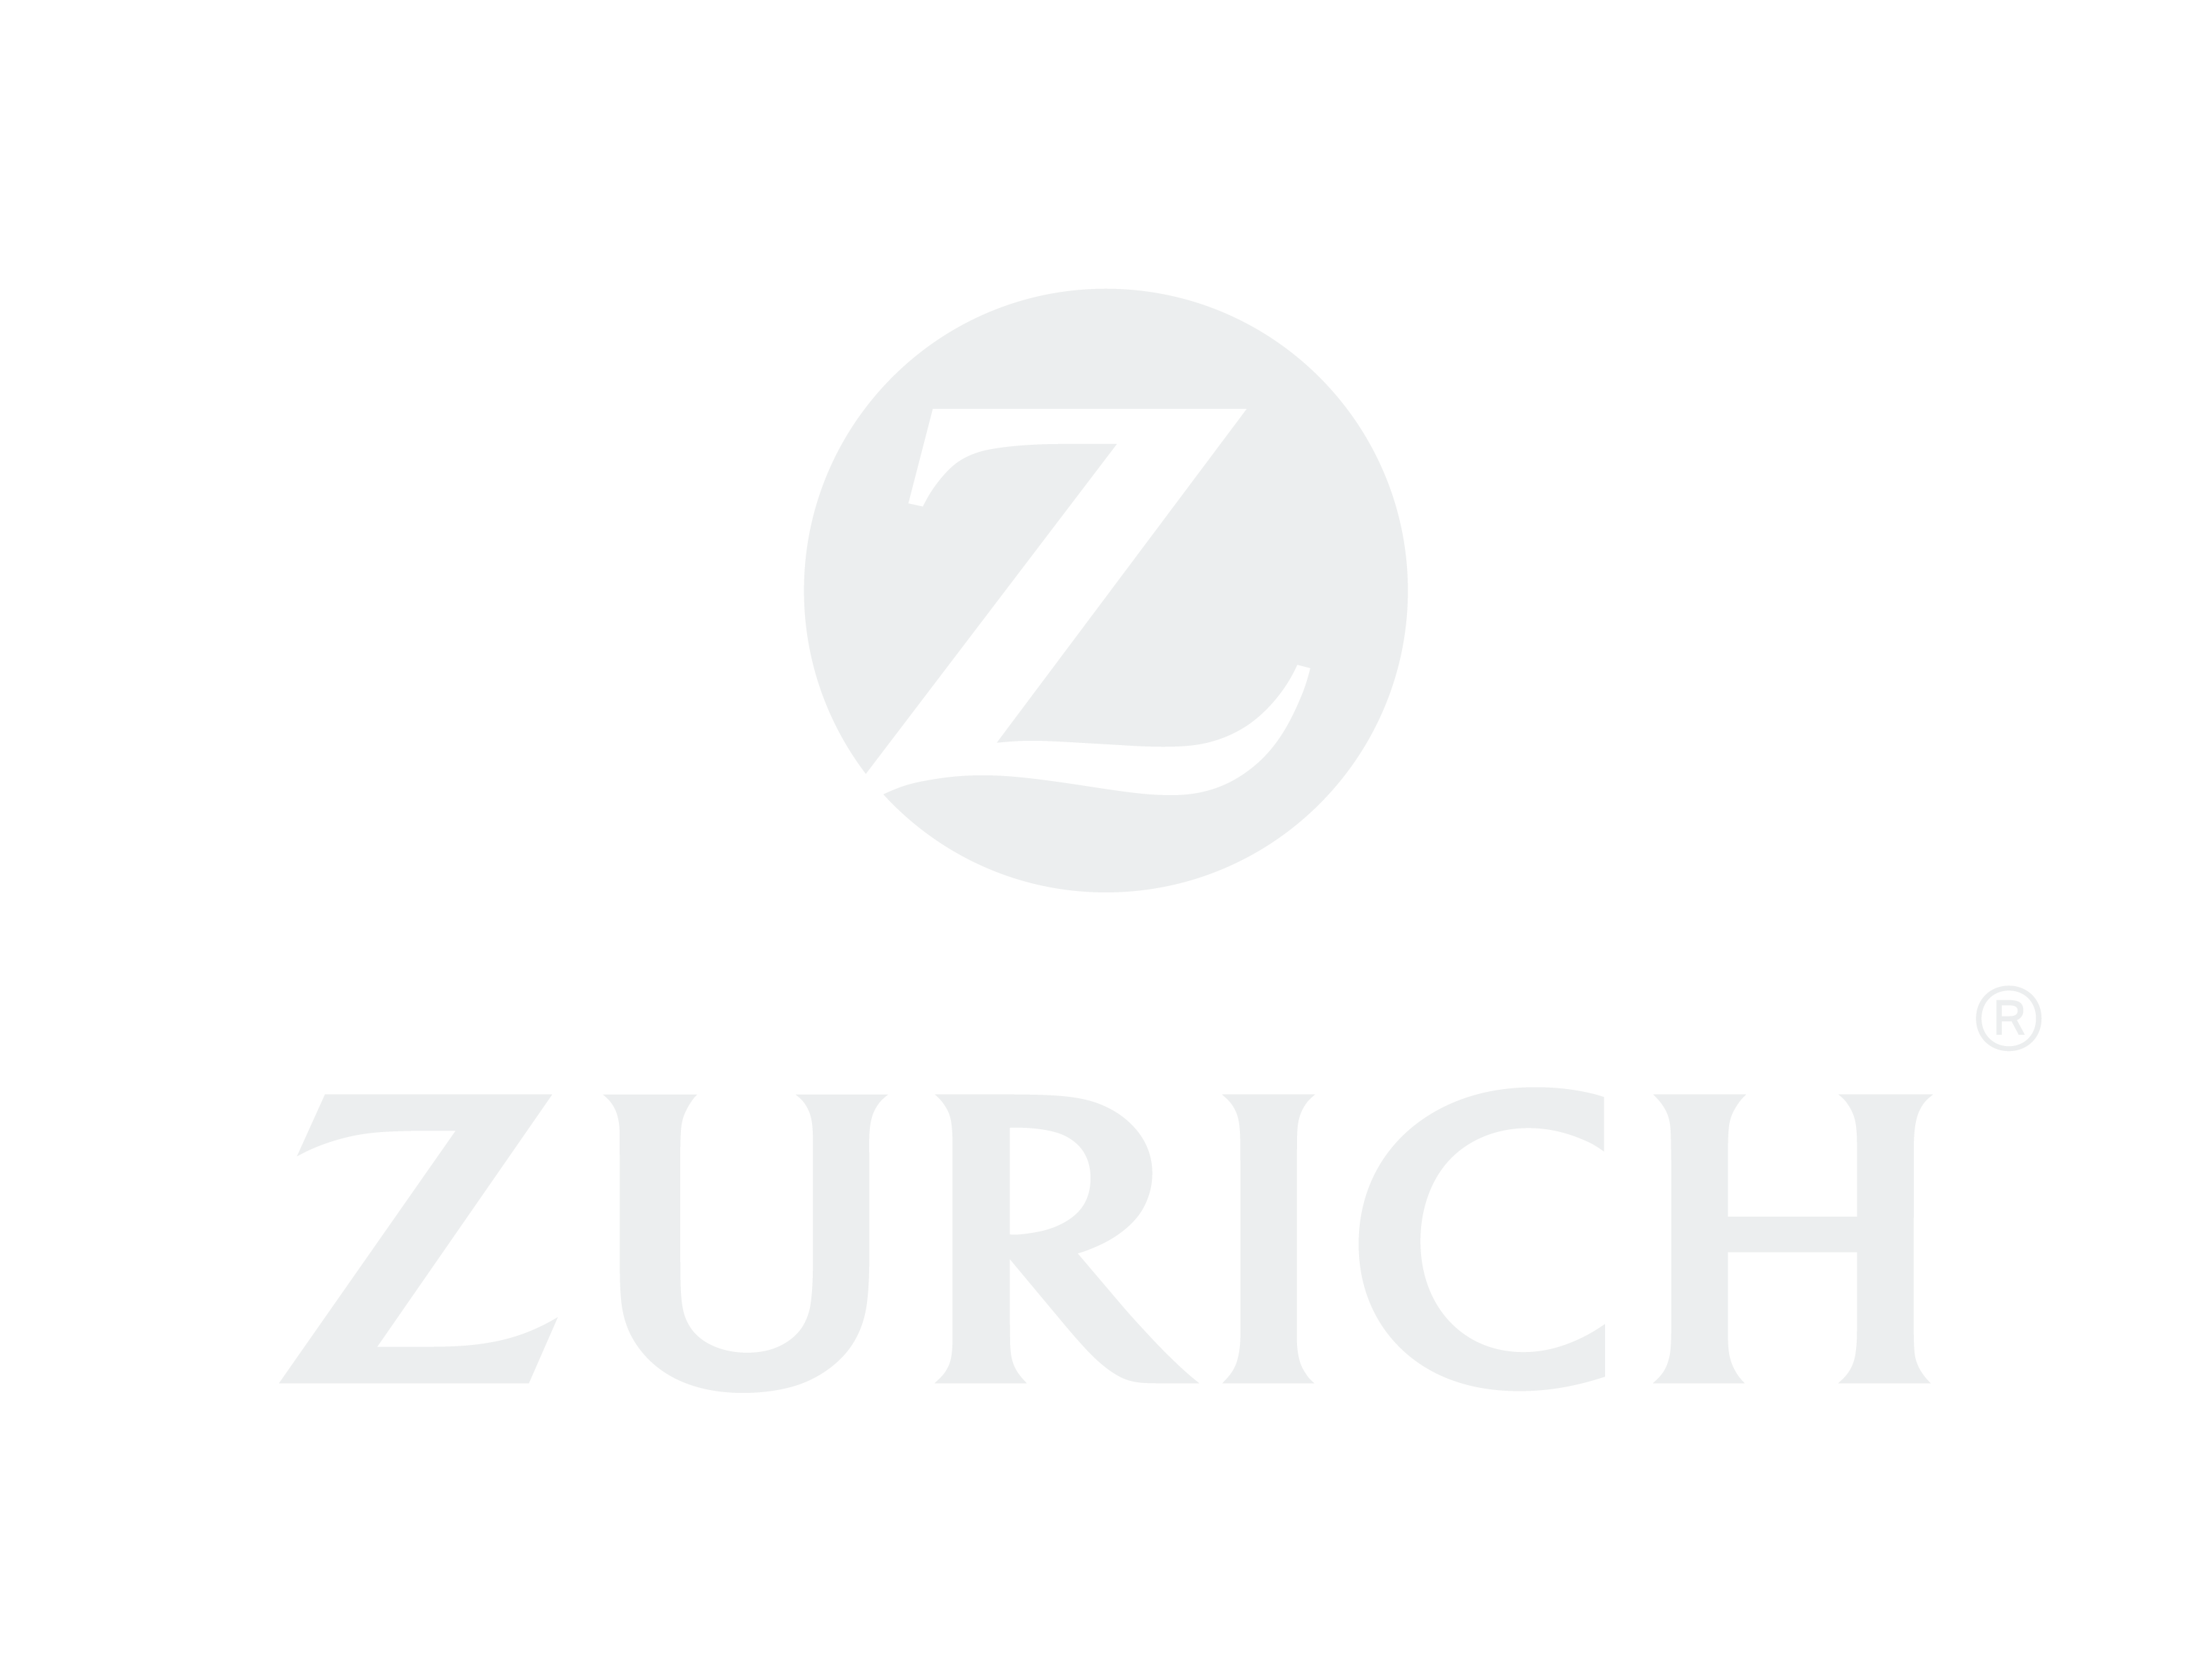 Zurich logo in white